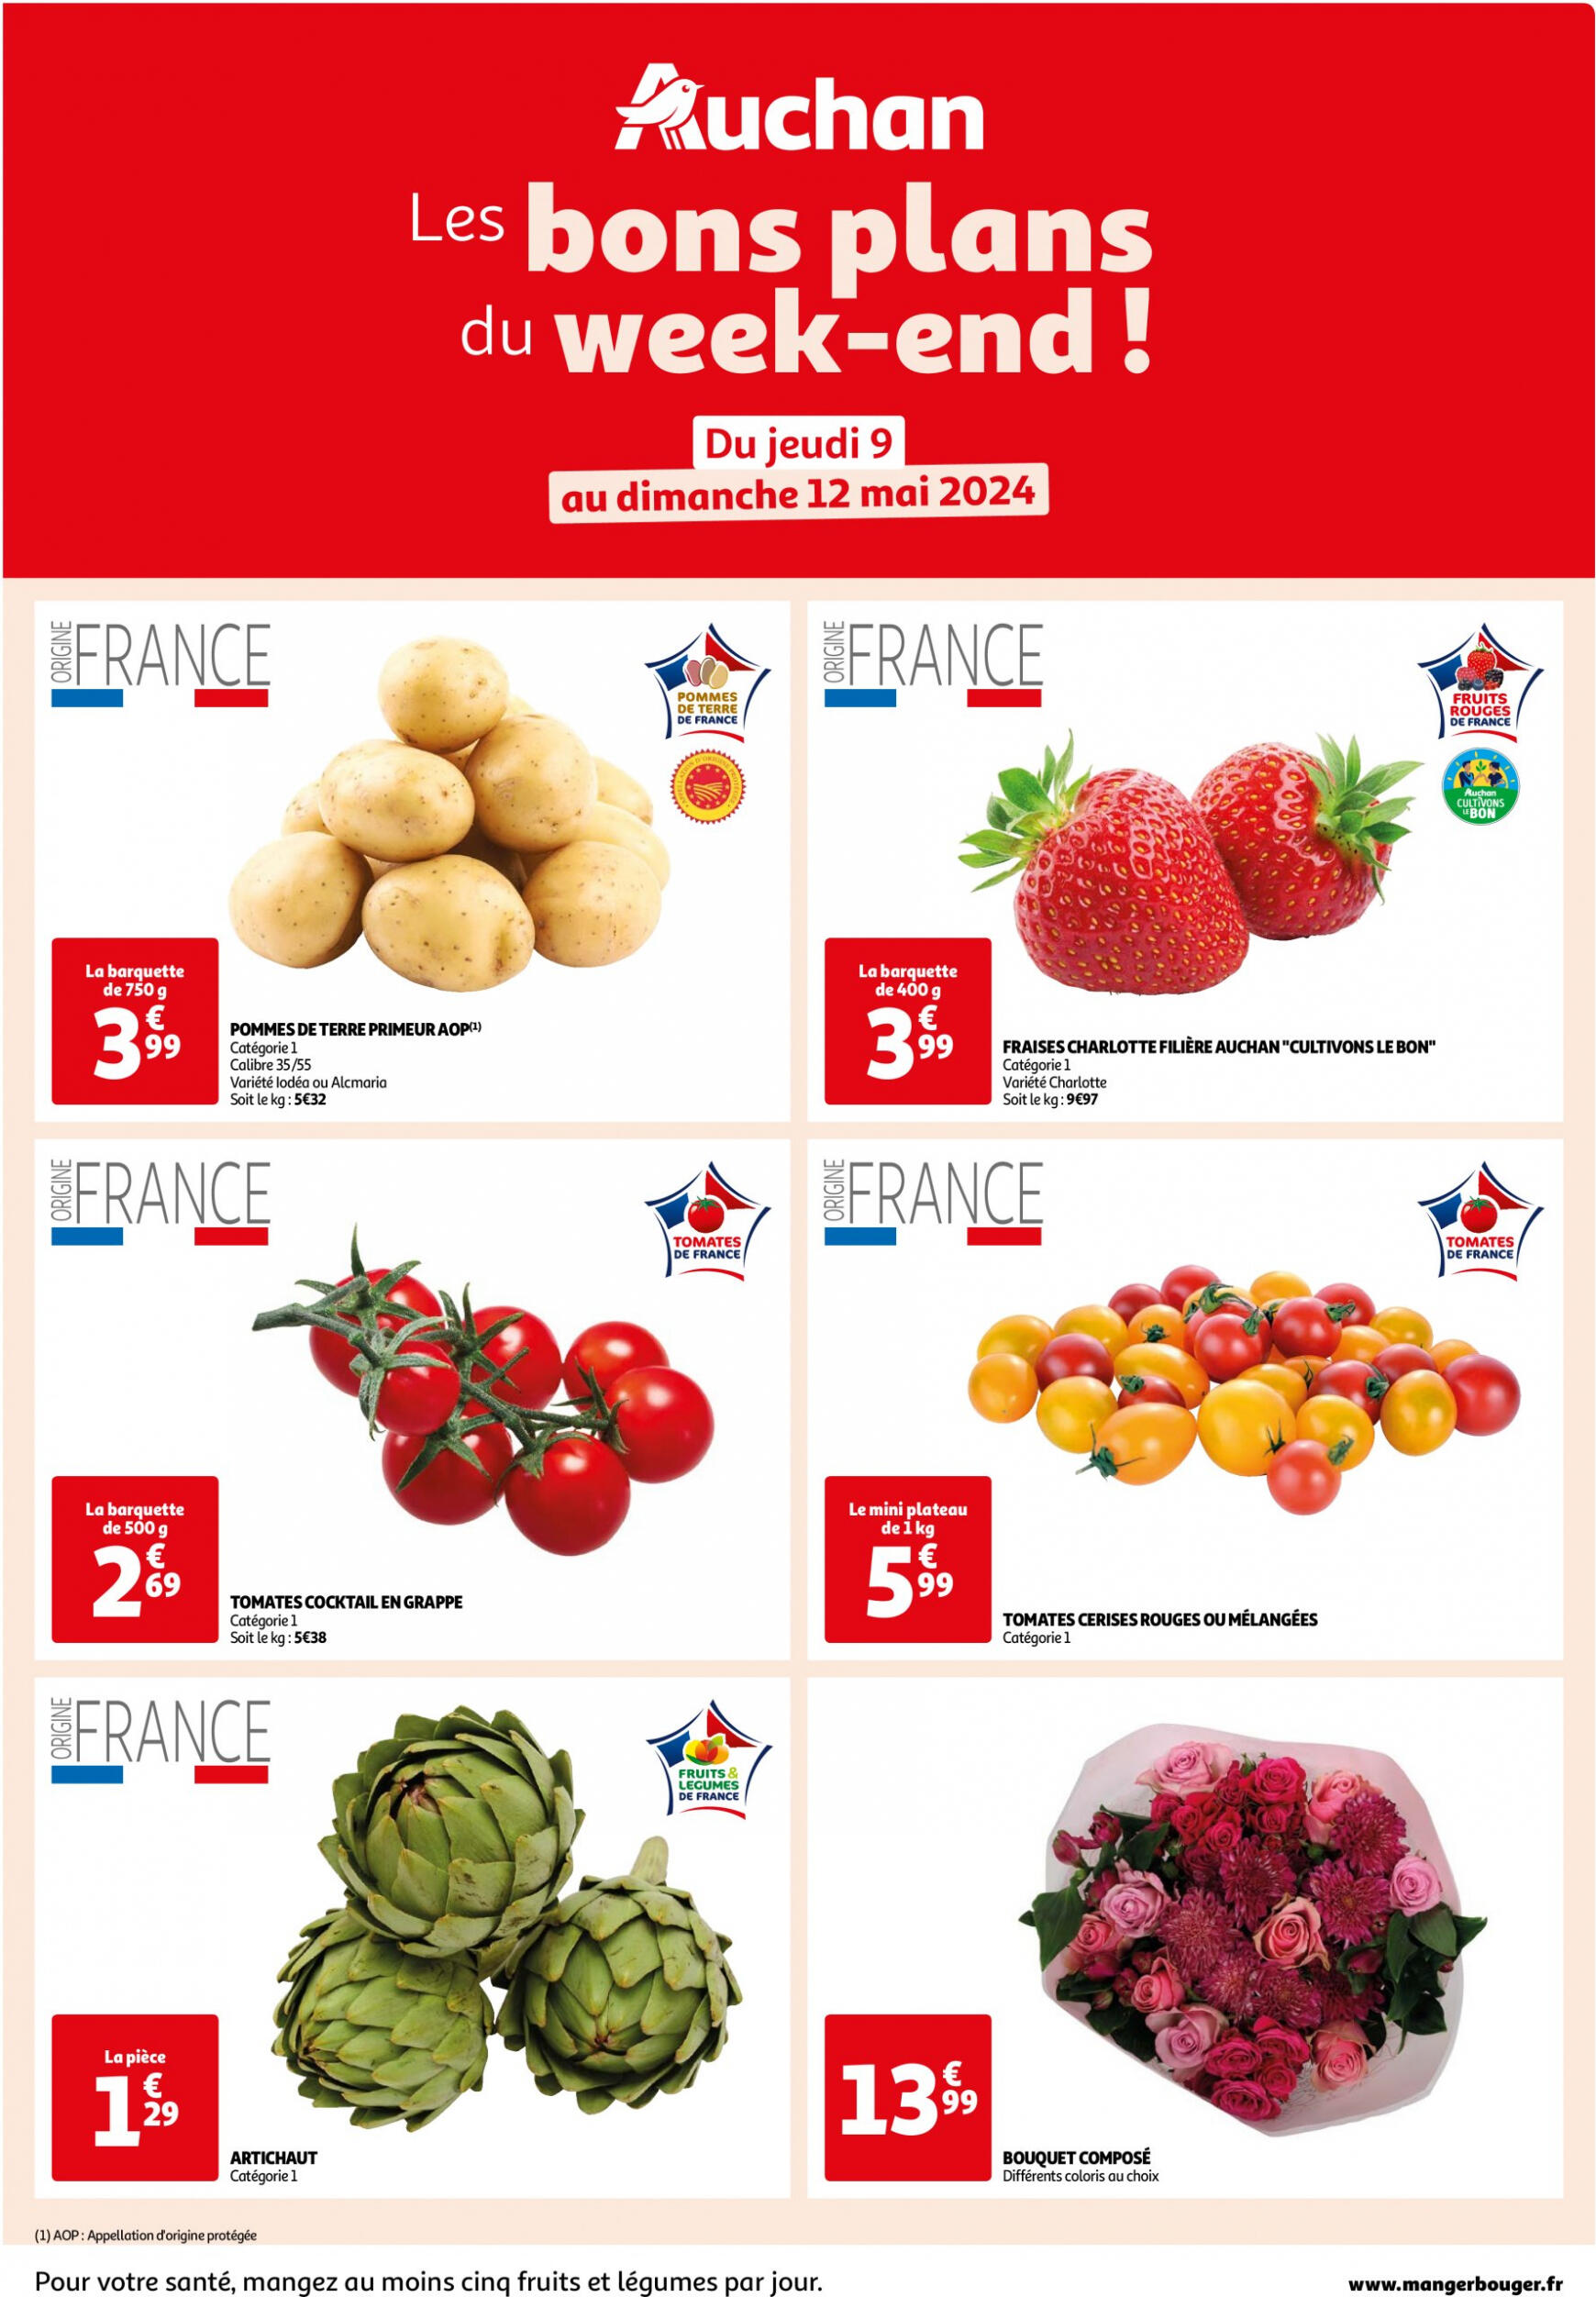 auchan - Auchan - Les bons plans du week-end dans votre hyper folder huidig 09.05. - 12.05. - page: 1